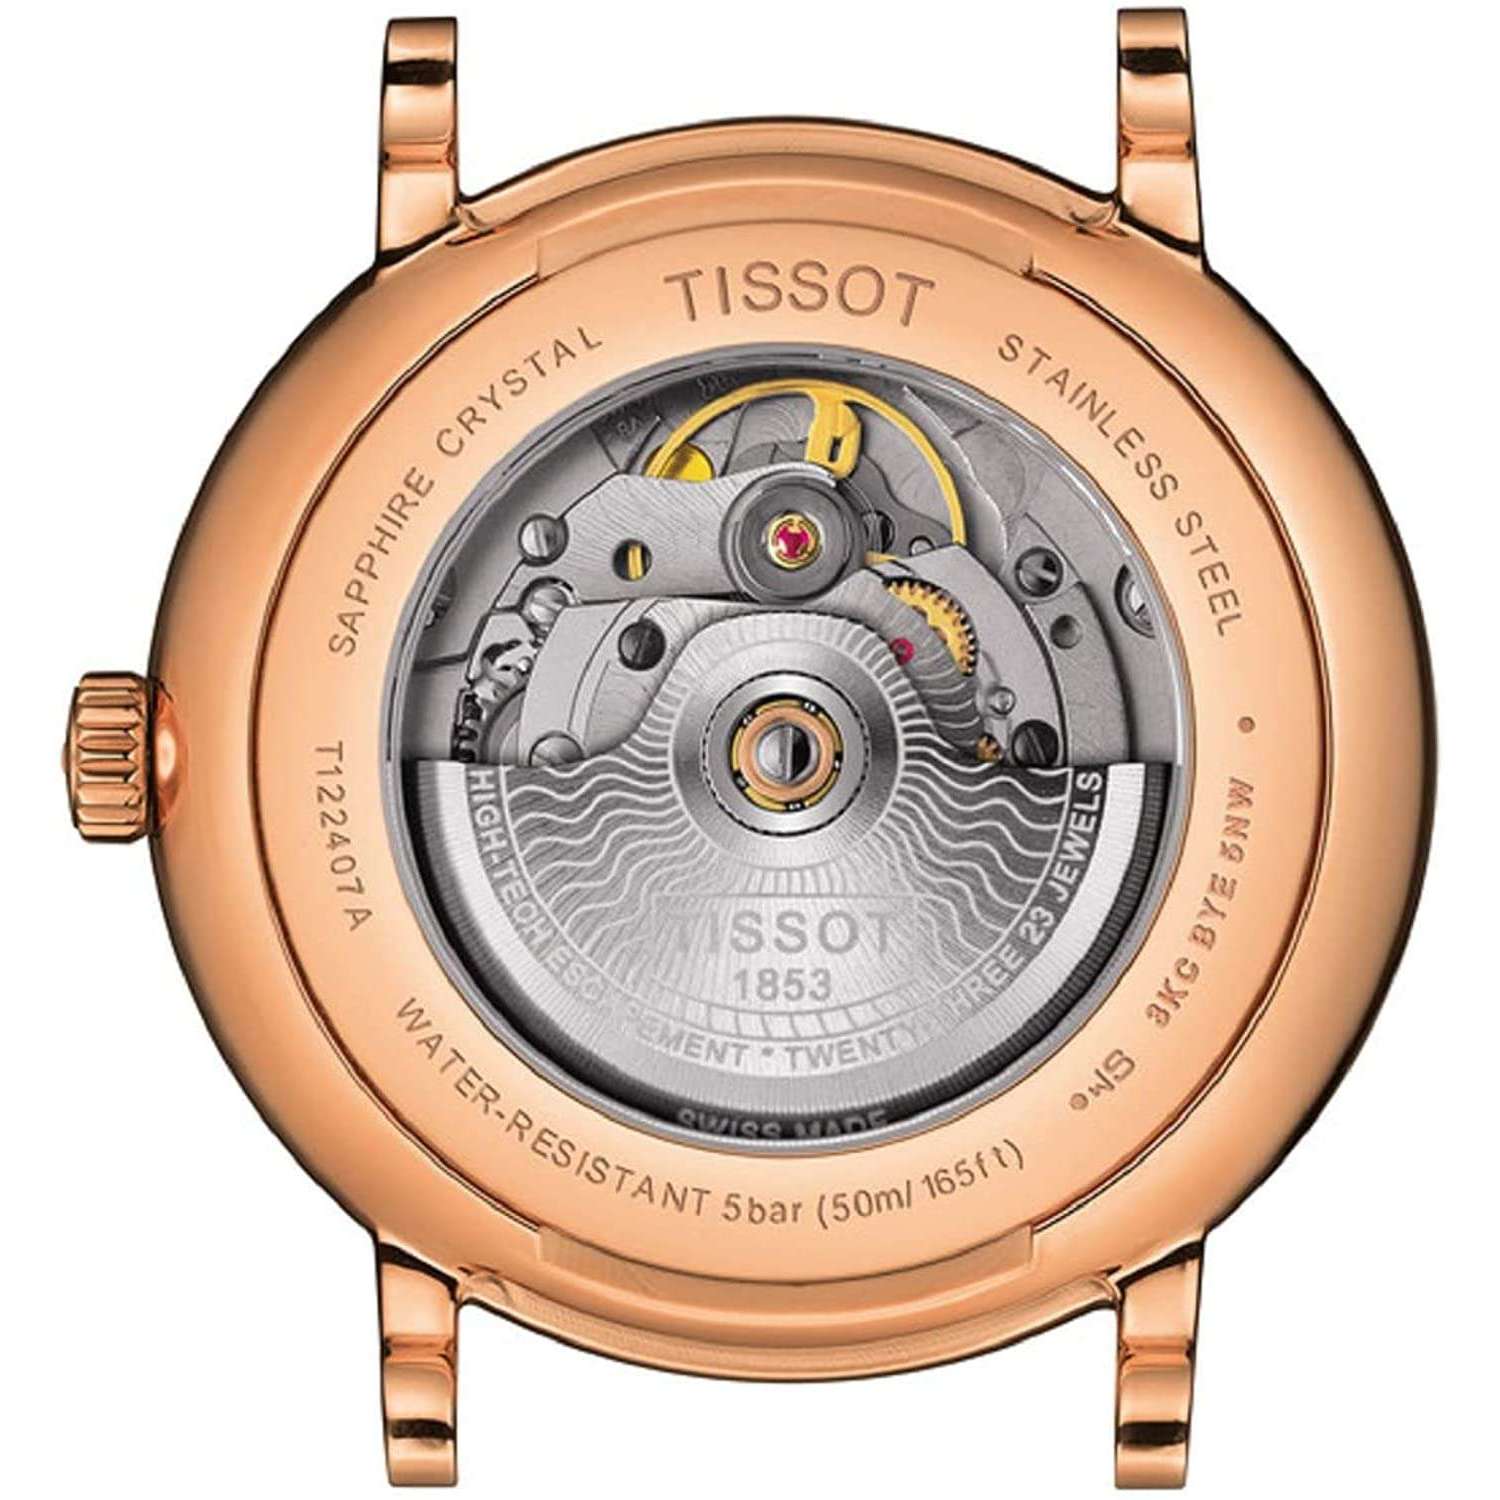 ROOK JAPAN:TISSOT CARSON PREMIUM POWERMATIC 80 AUTOMATIC 40 MM MEN WATCH T1224073603100,Luxury Watch,Tissot Carson